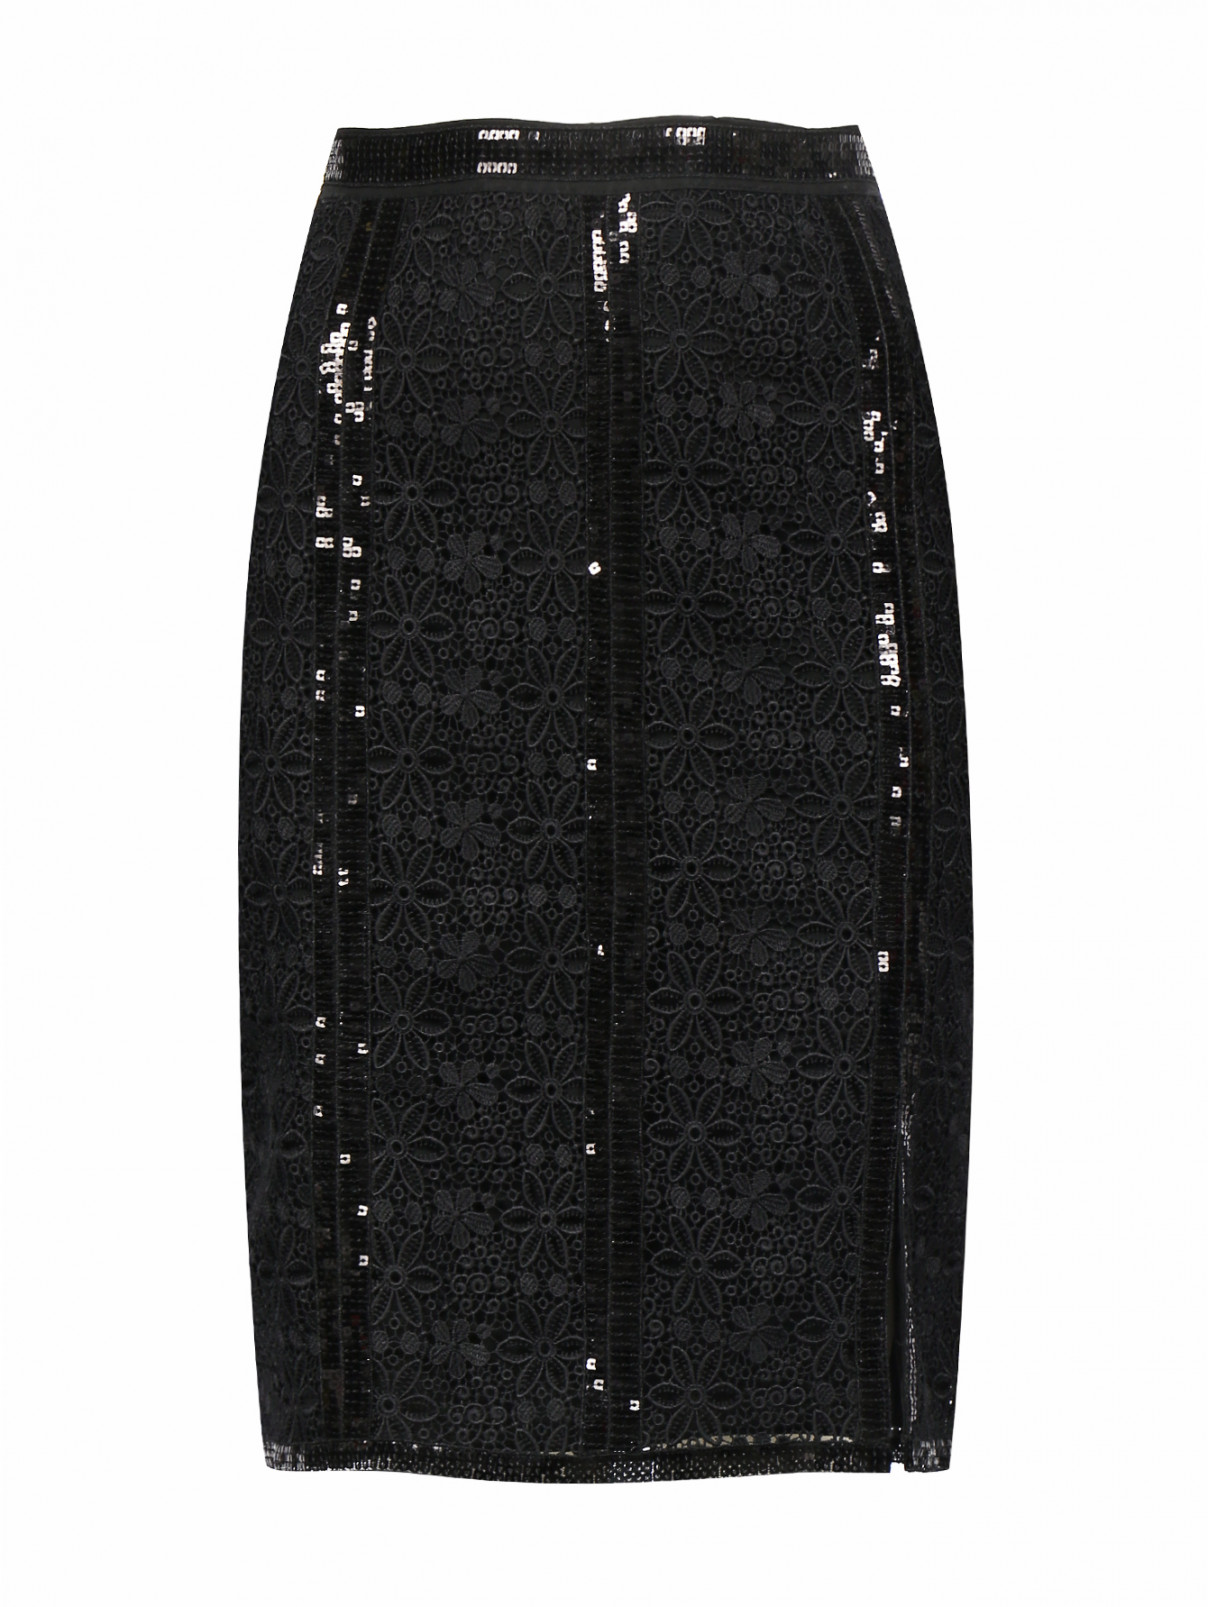 Юбка-мини из хлопка с кружевной отделкой декорированная пайетками Charo Ruiz  –  Общий вид  – Цвет:  Черный